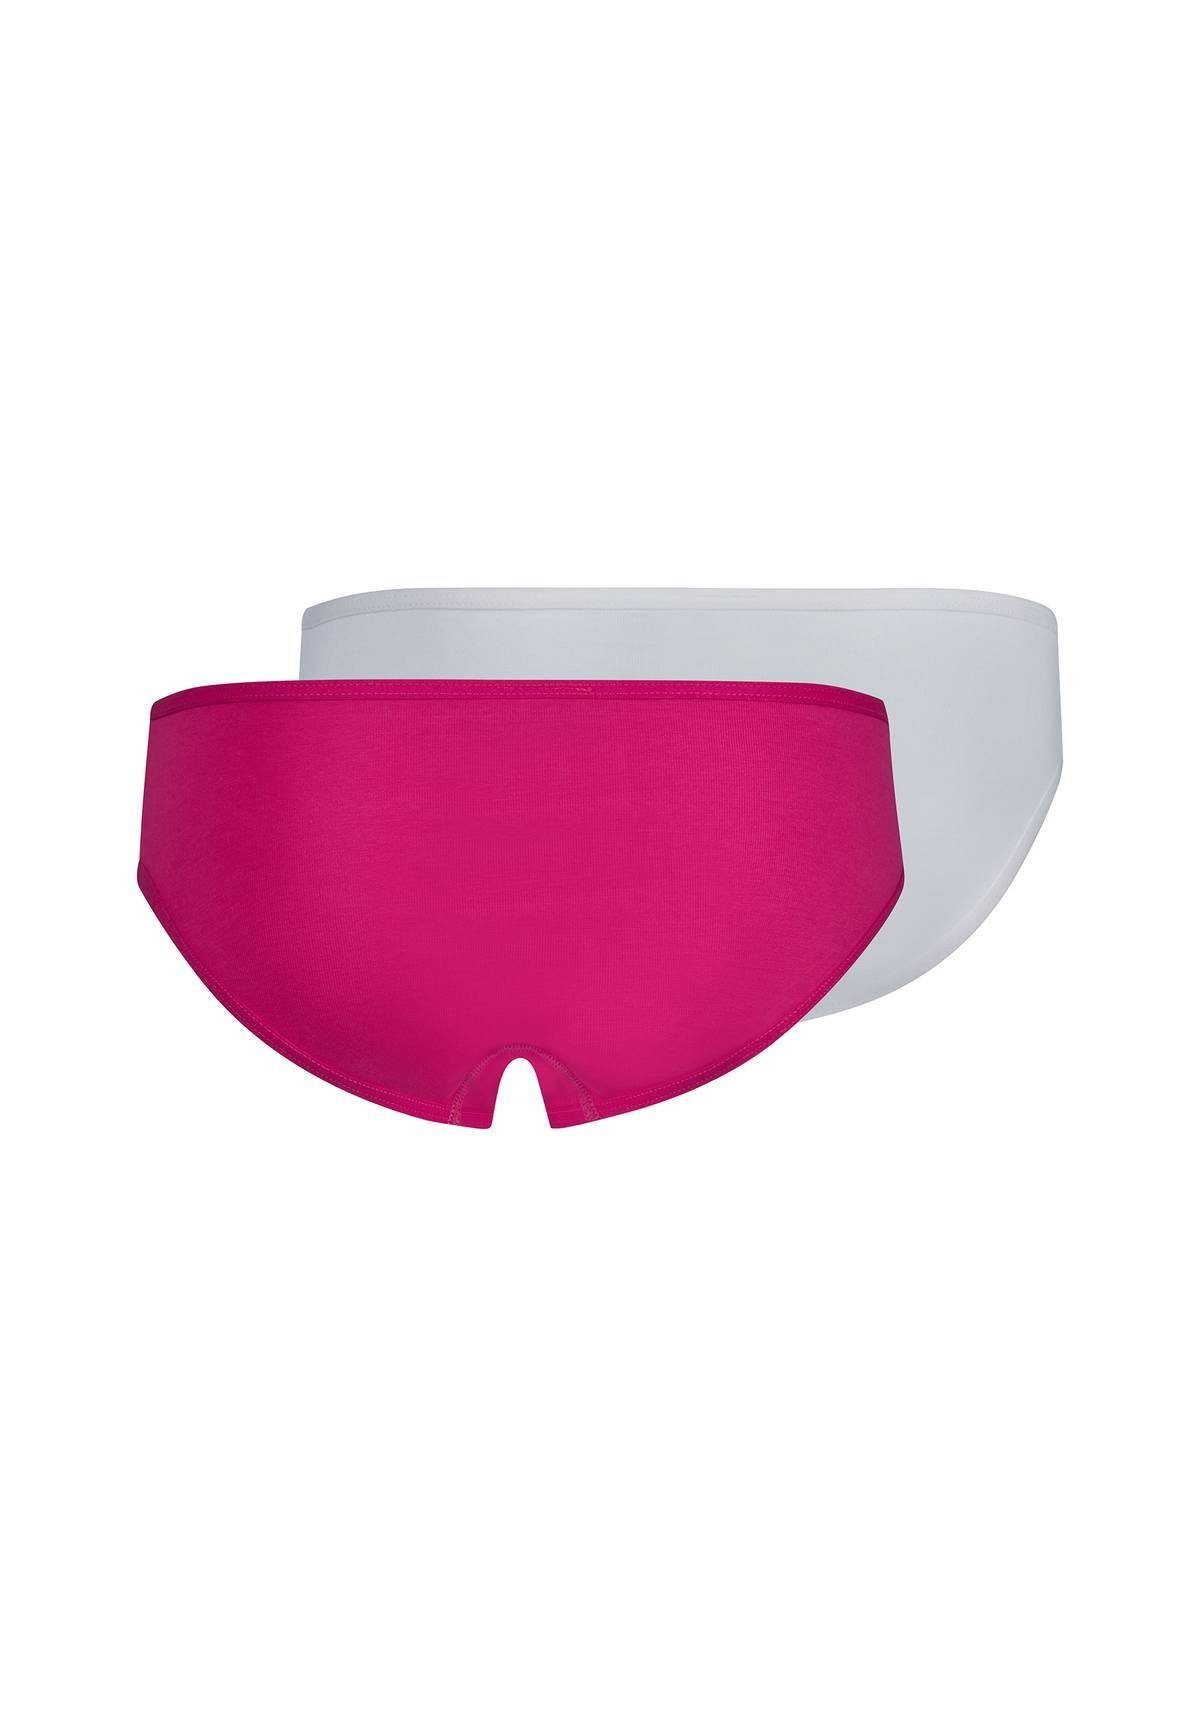 Briefs Pink/Weiß Rio-Slip, Slip, 2er Bikini Slip - Mädchen Pack Skiny